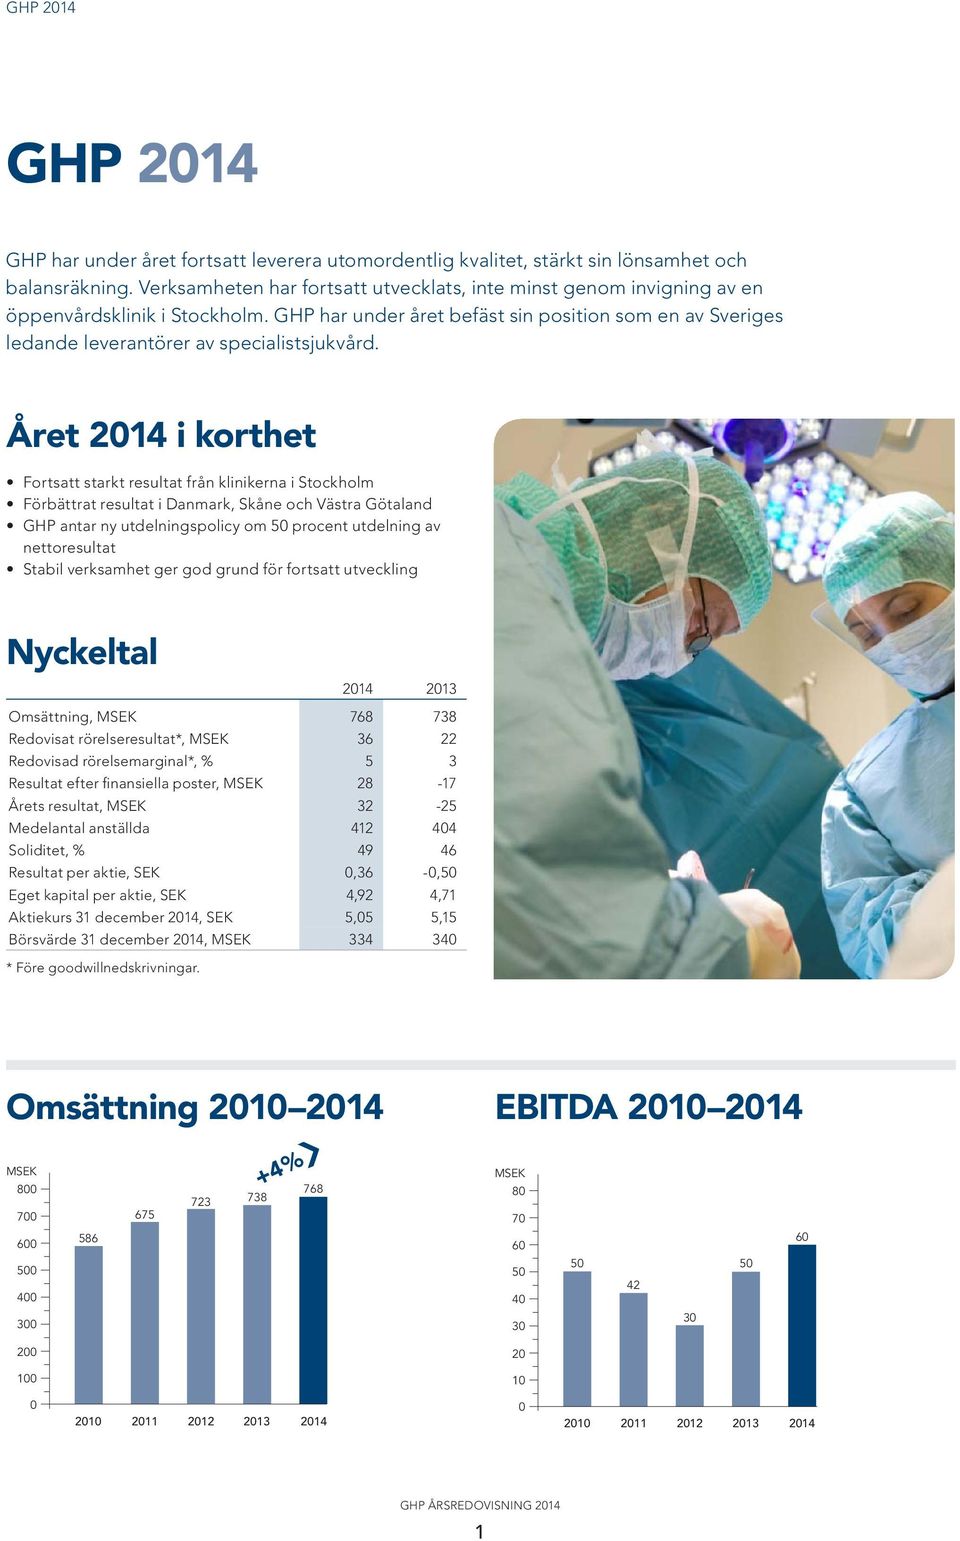 GHP har under året befäst sin position som en av Sveriges ledande leverantörer av specialistsjukvård.